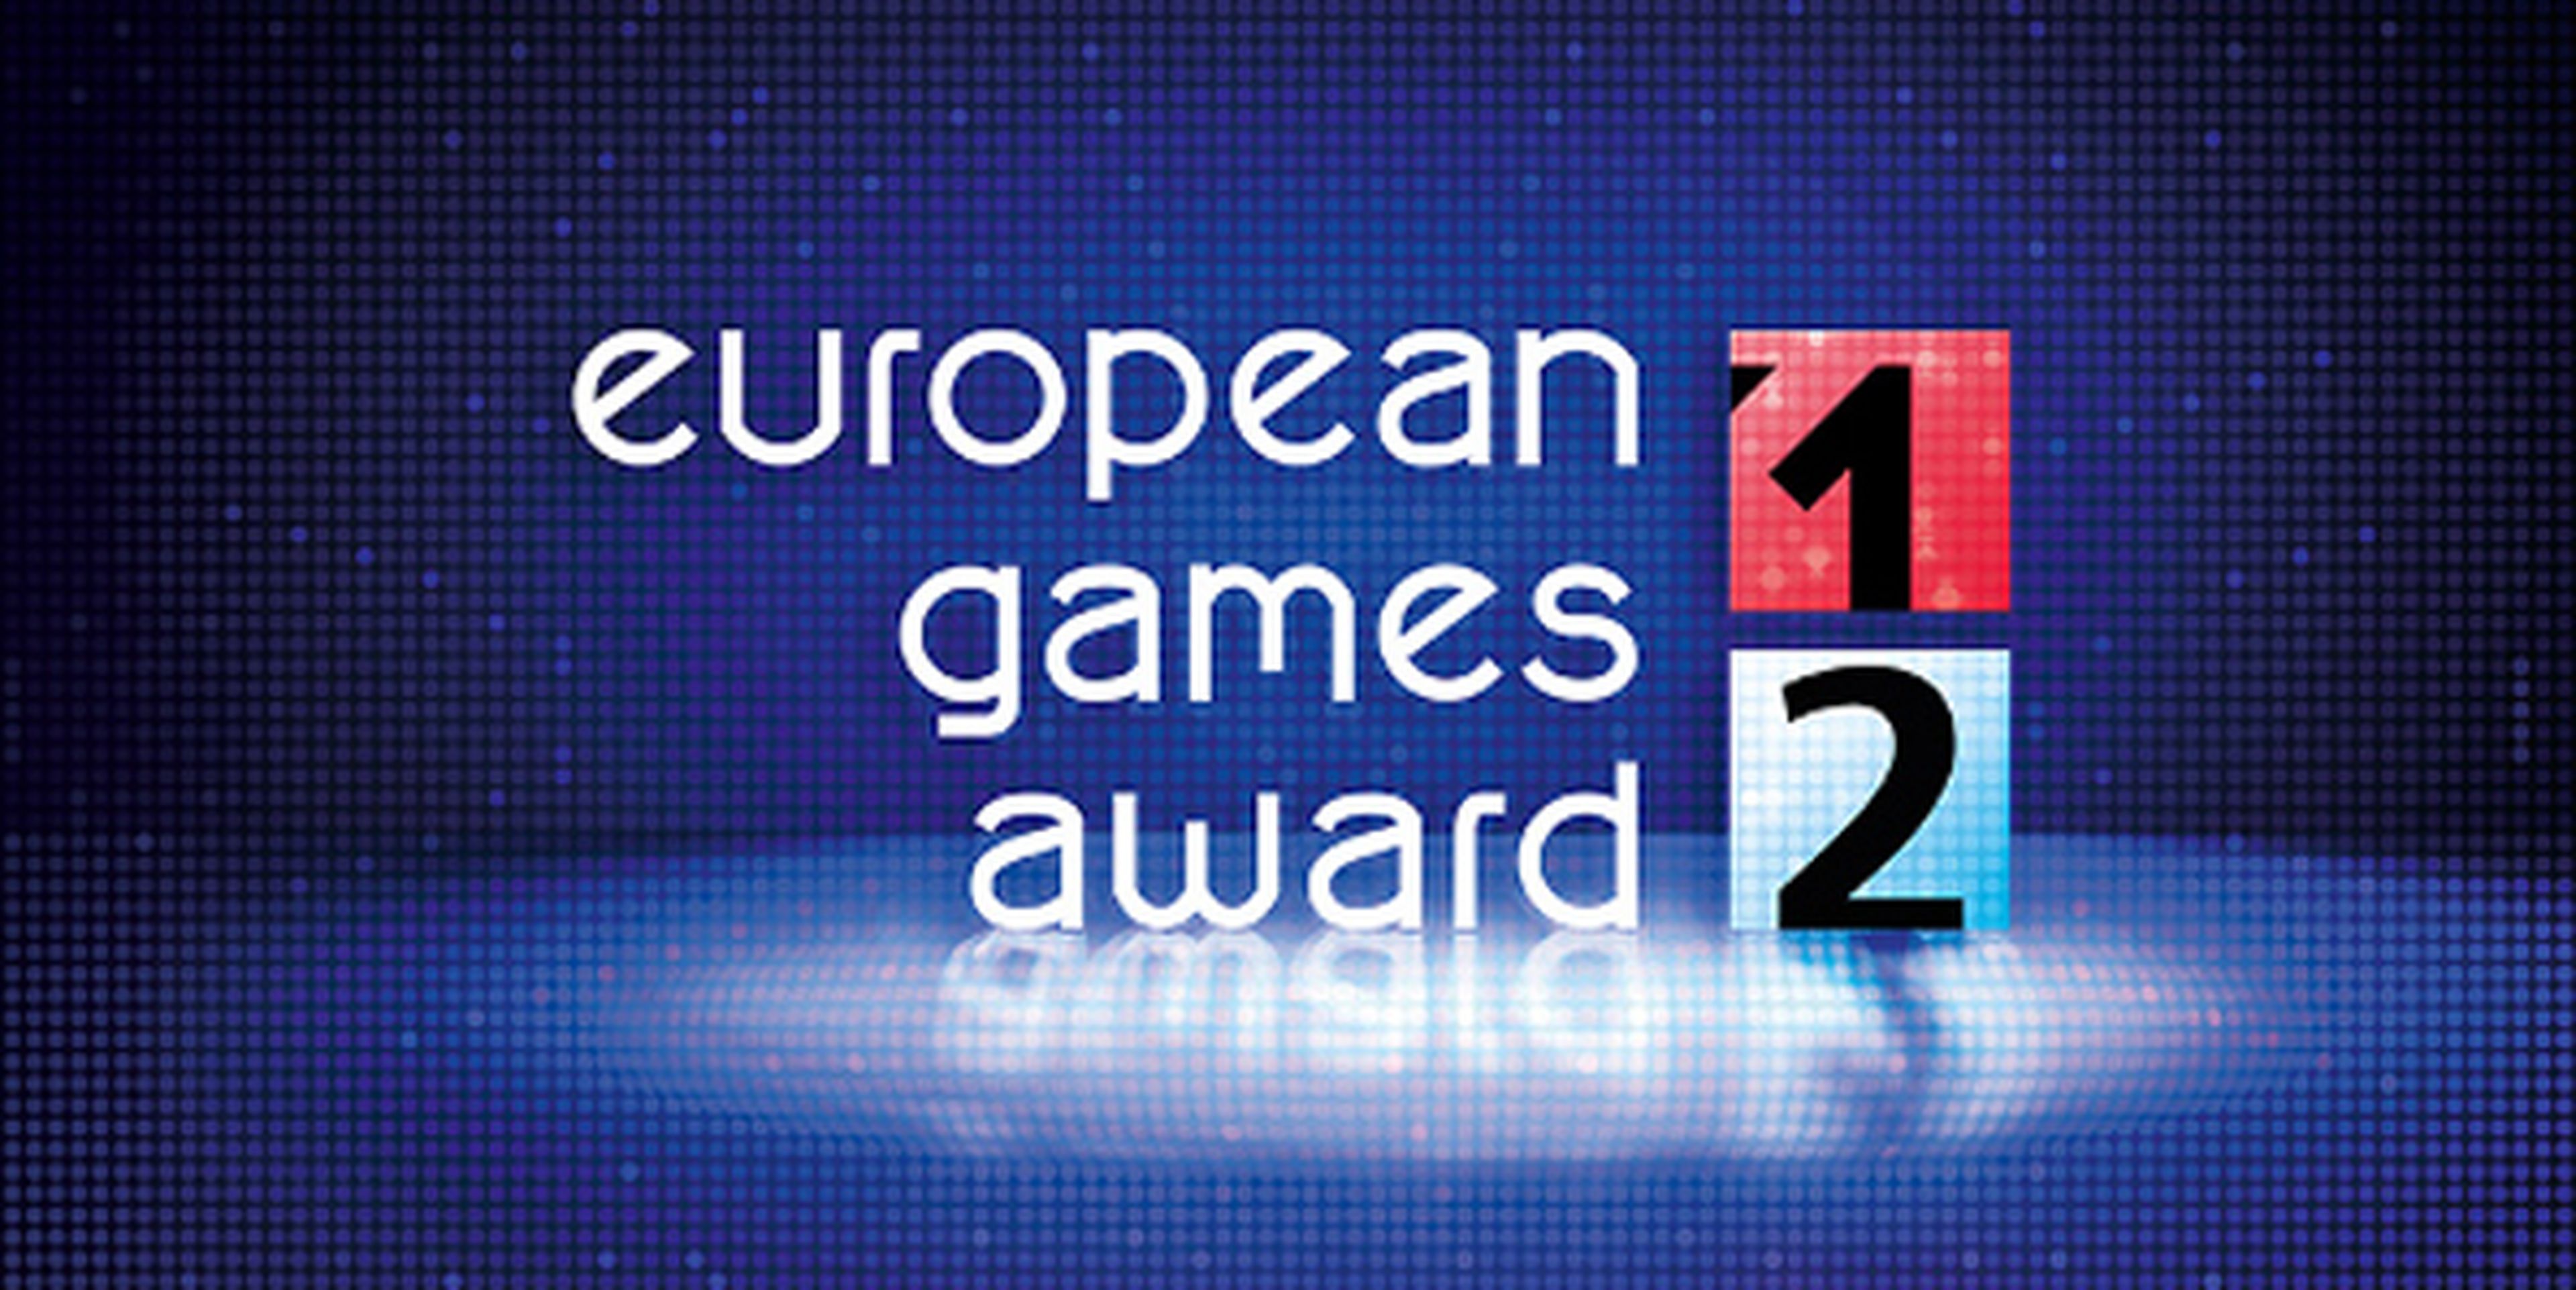 Vota en los European Games Award